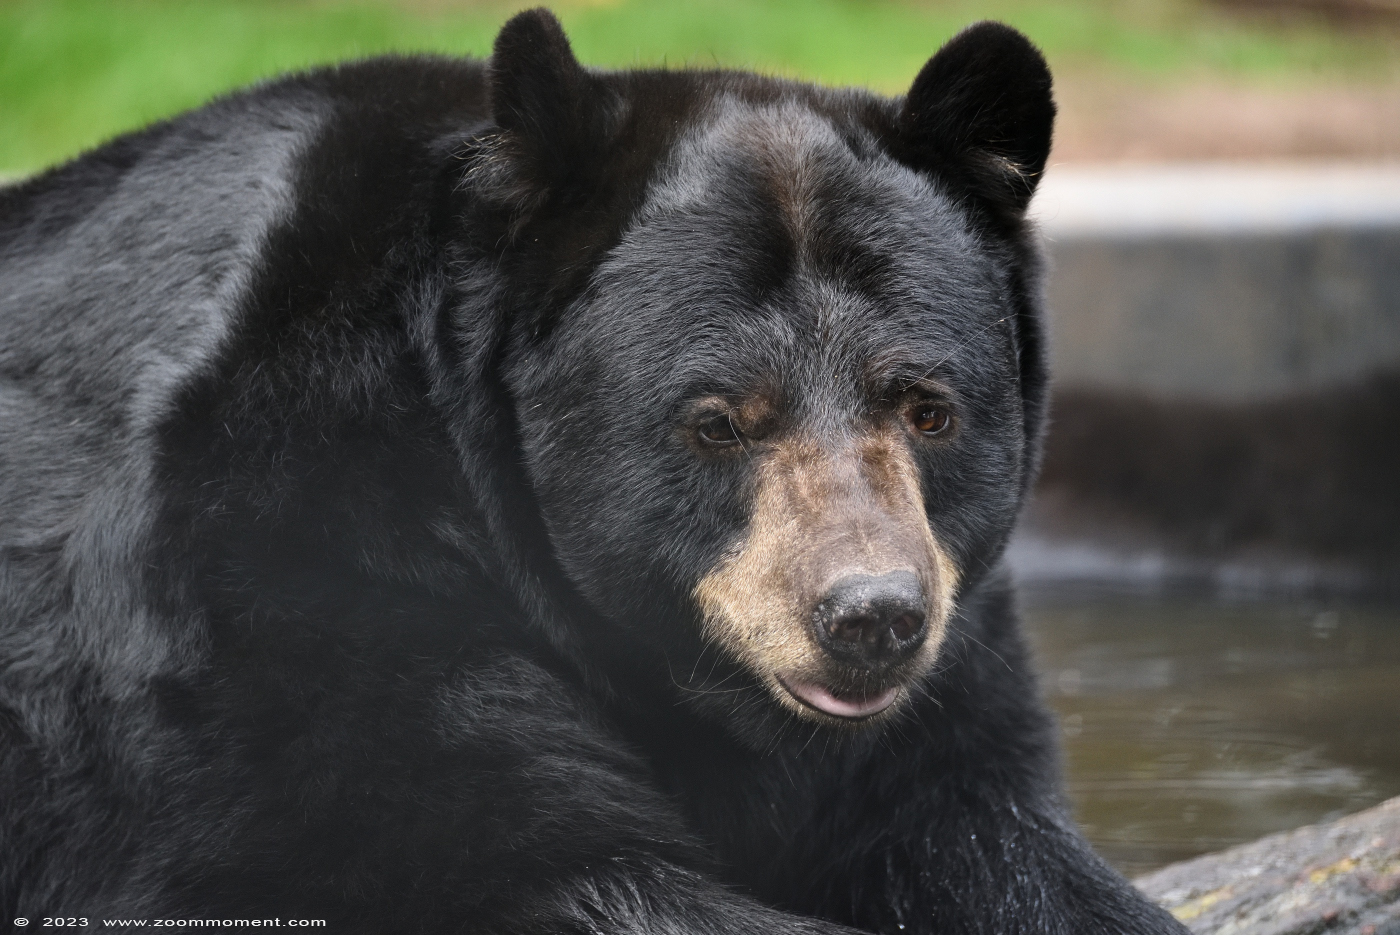 Amerikaanse zwarte beer ( Ursus americanus ) American black bear
Trefwoorden: Ziezoo Volkel Nederland Amerikaanse zwarte beer Ursus americanus American black bear